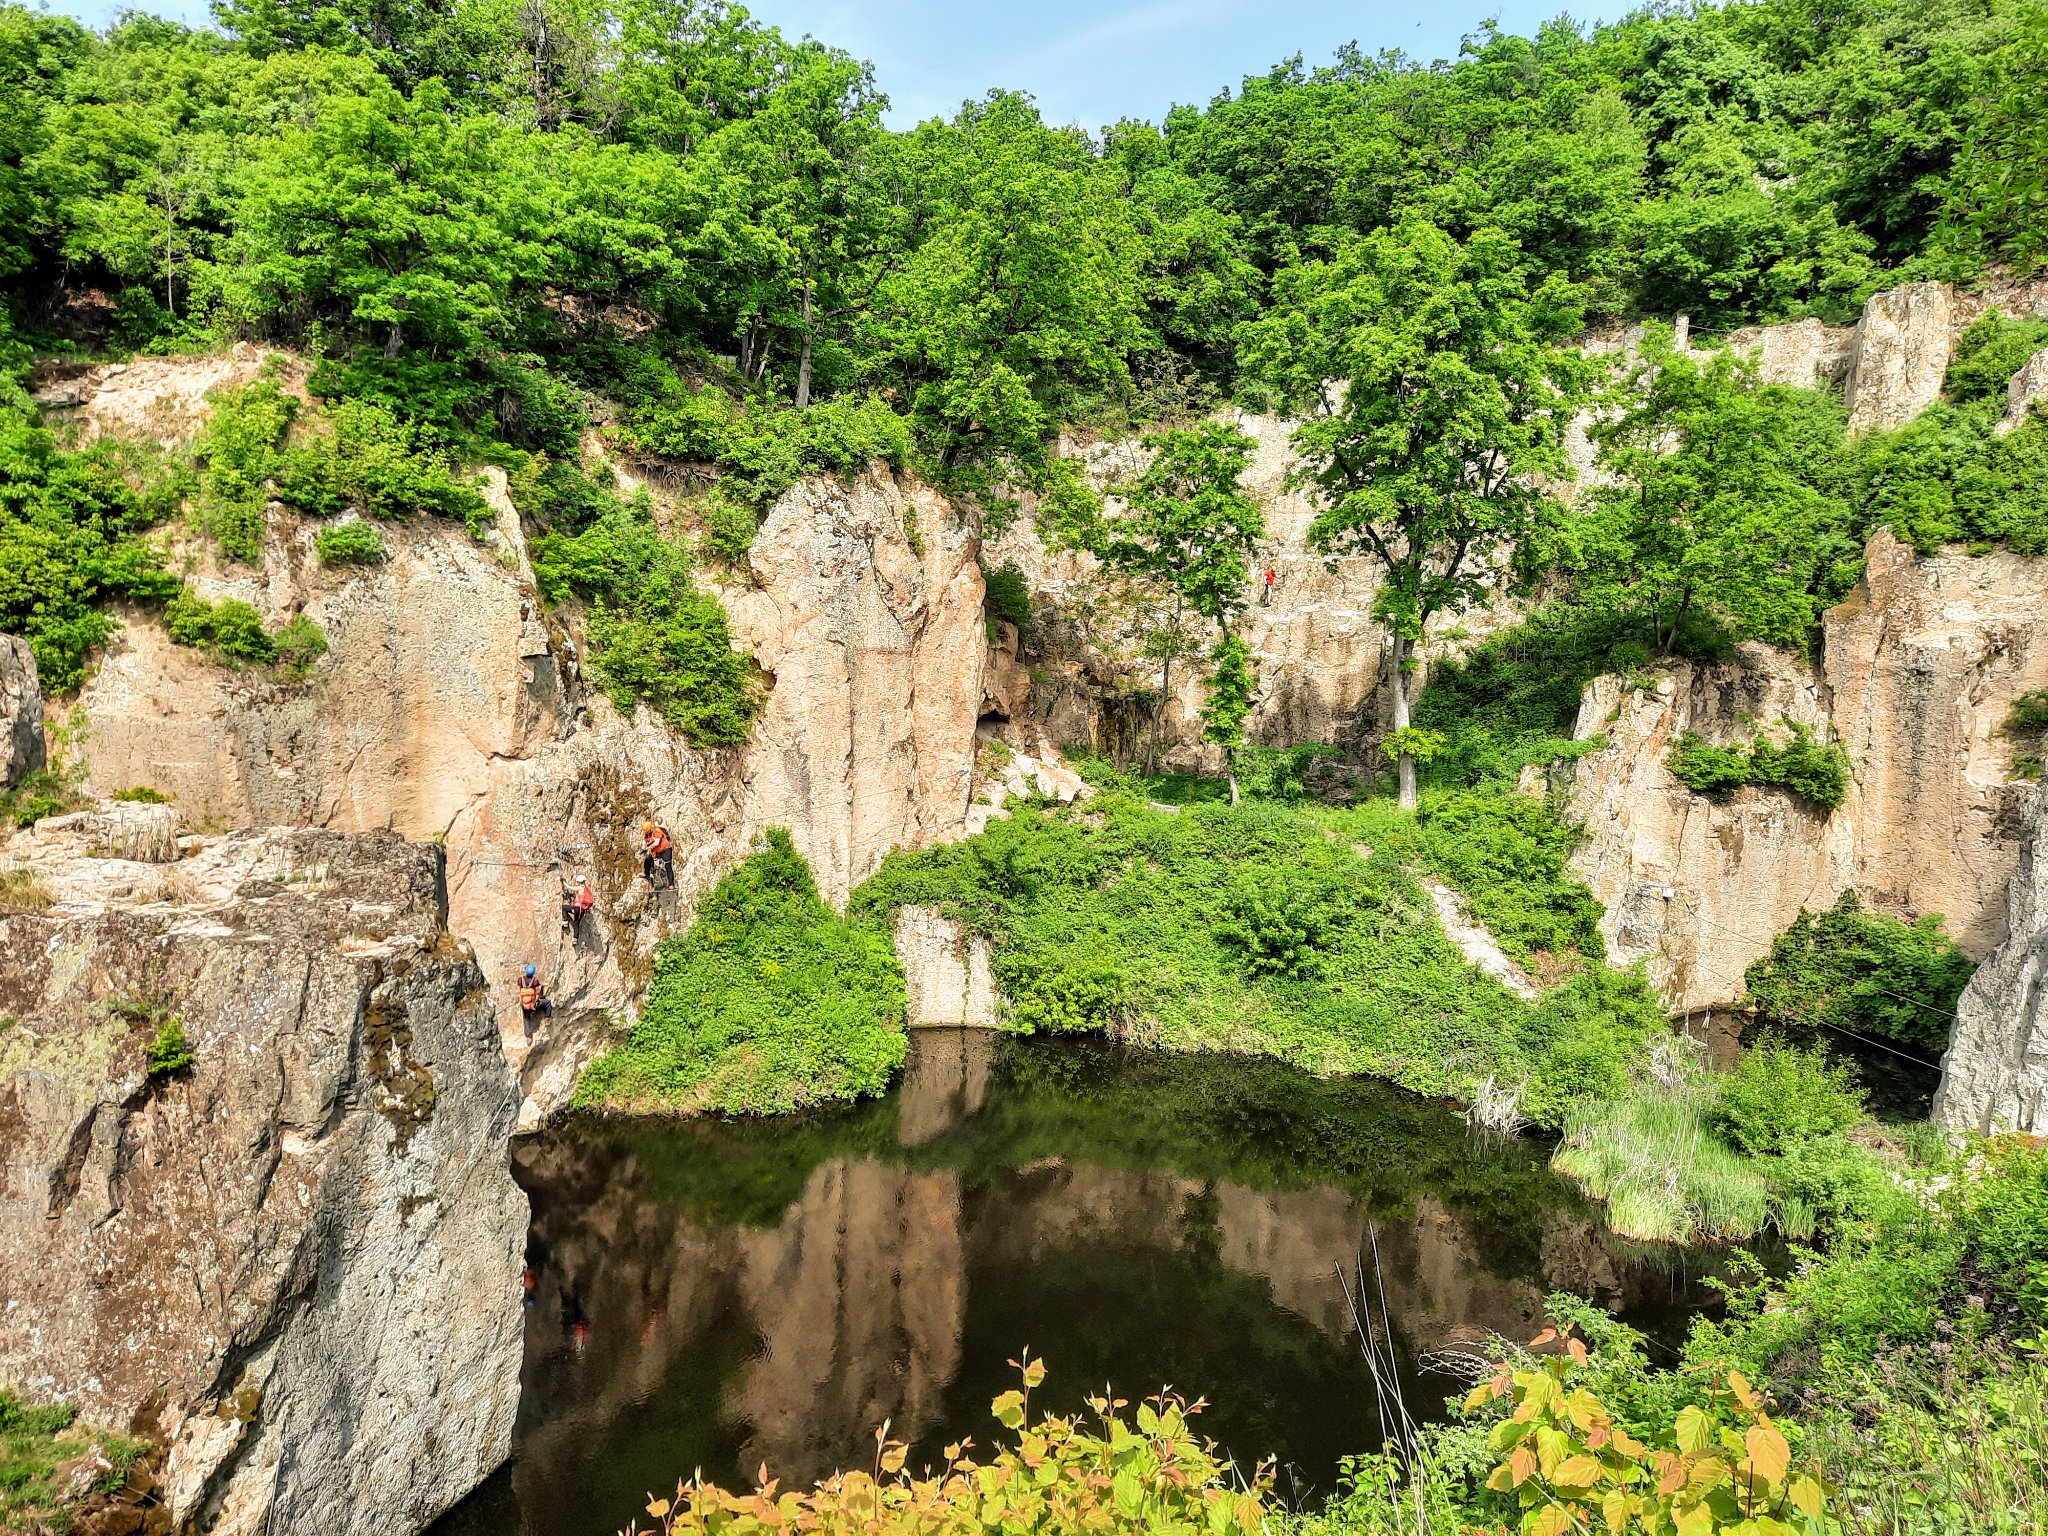 Egyedülálló természeti csodát rejt az egykori malomkőbánya Észak-Magyarországon